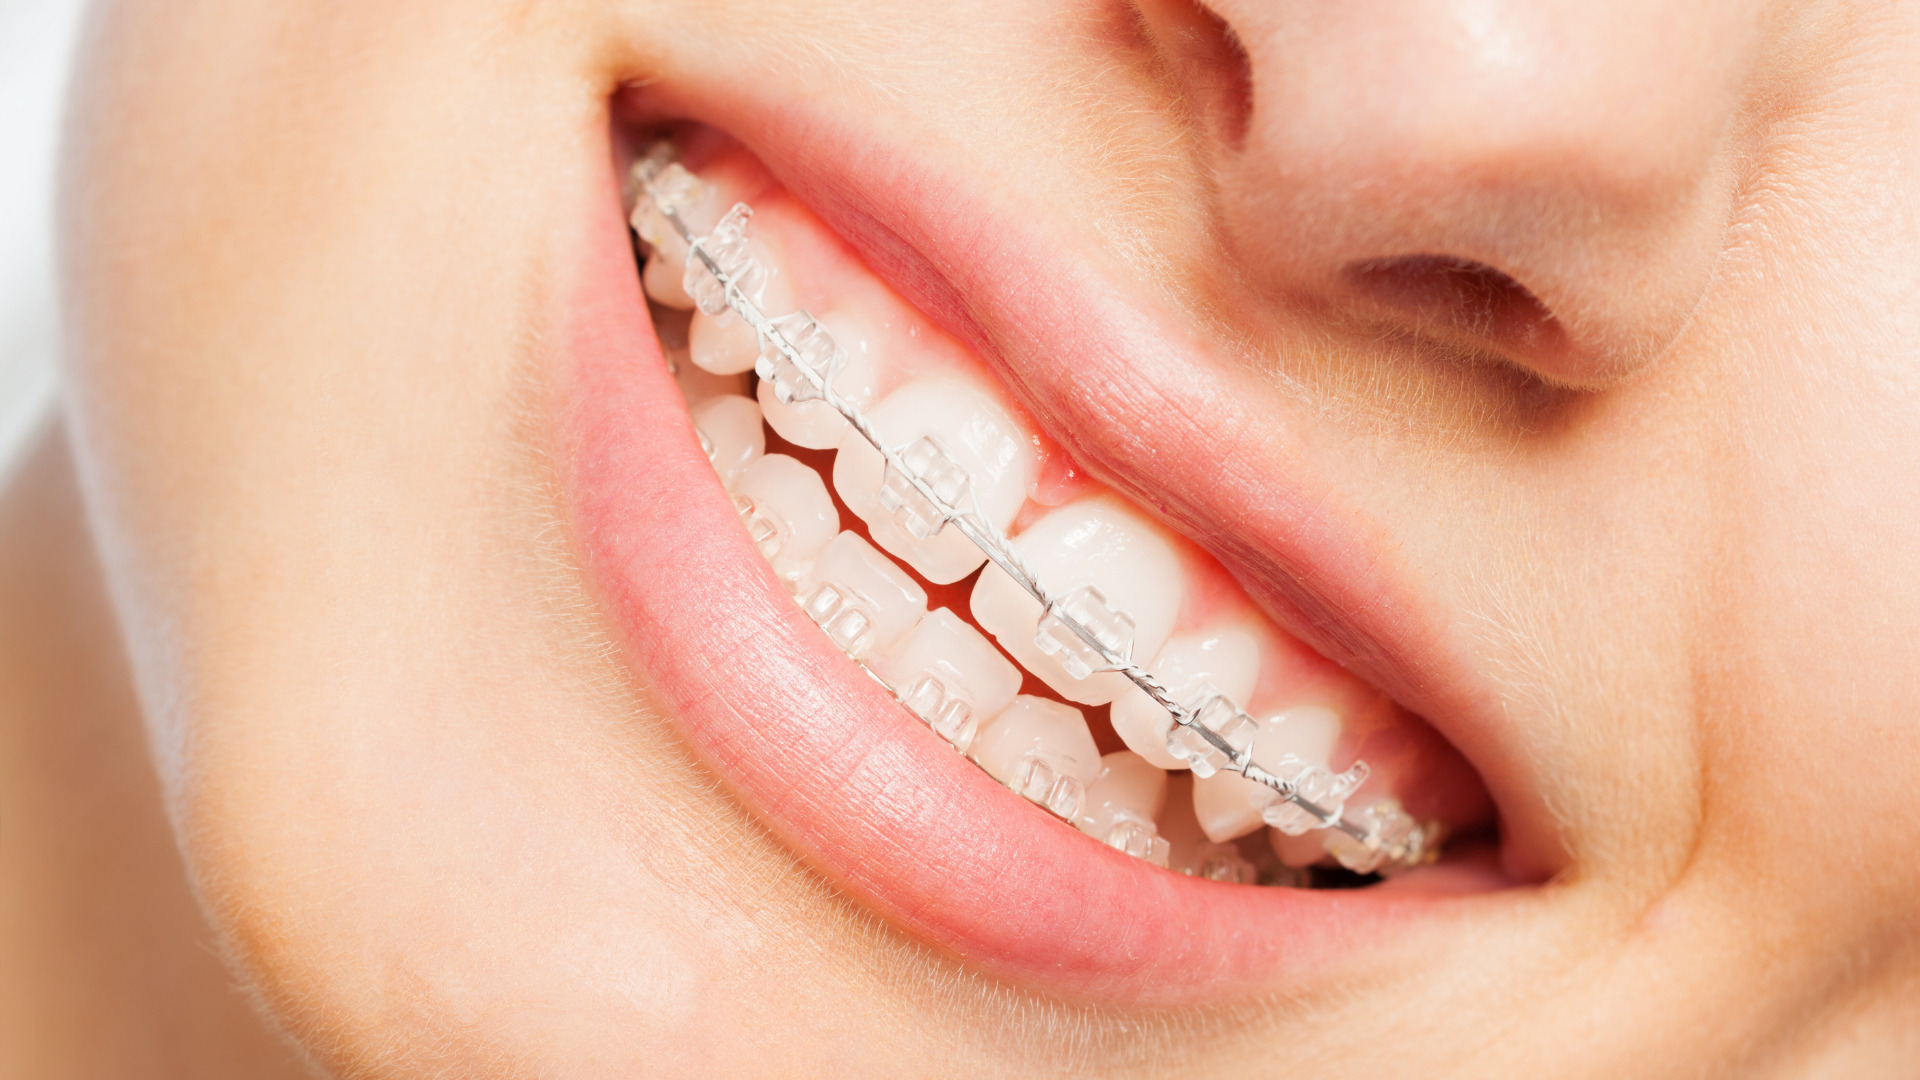 Porselen Diş Teli Nedir?